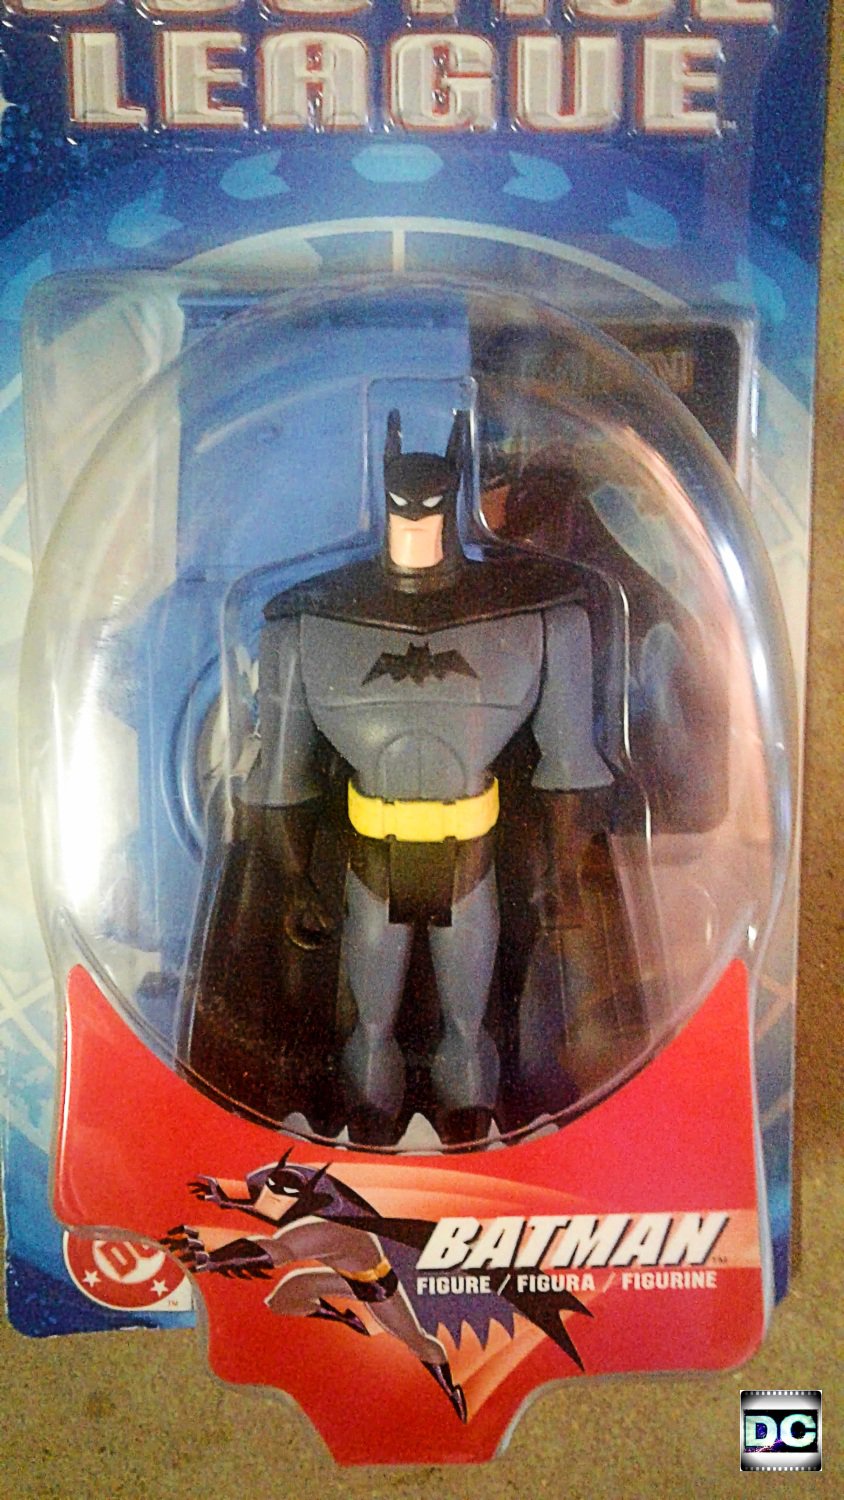 B4423 Mattel Batman Justice League Unlimited 4.75 Action Figure 2003 Series 1